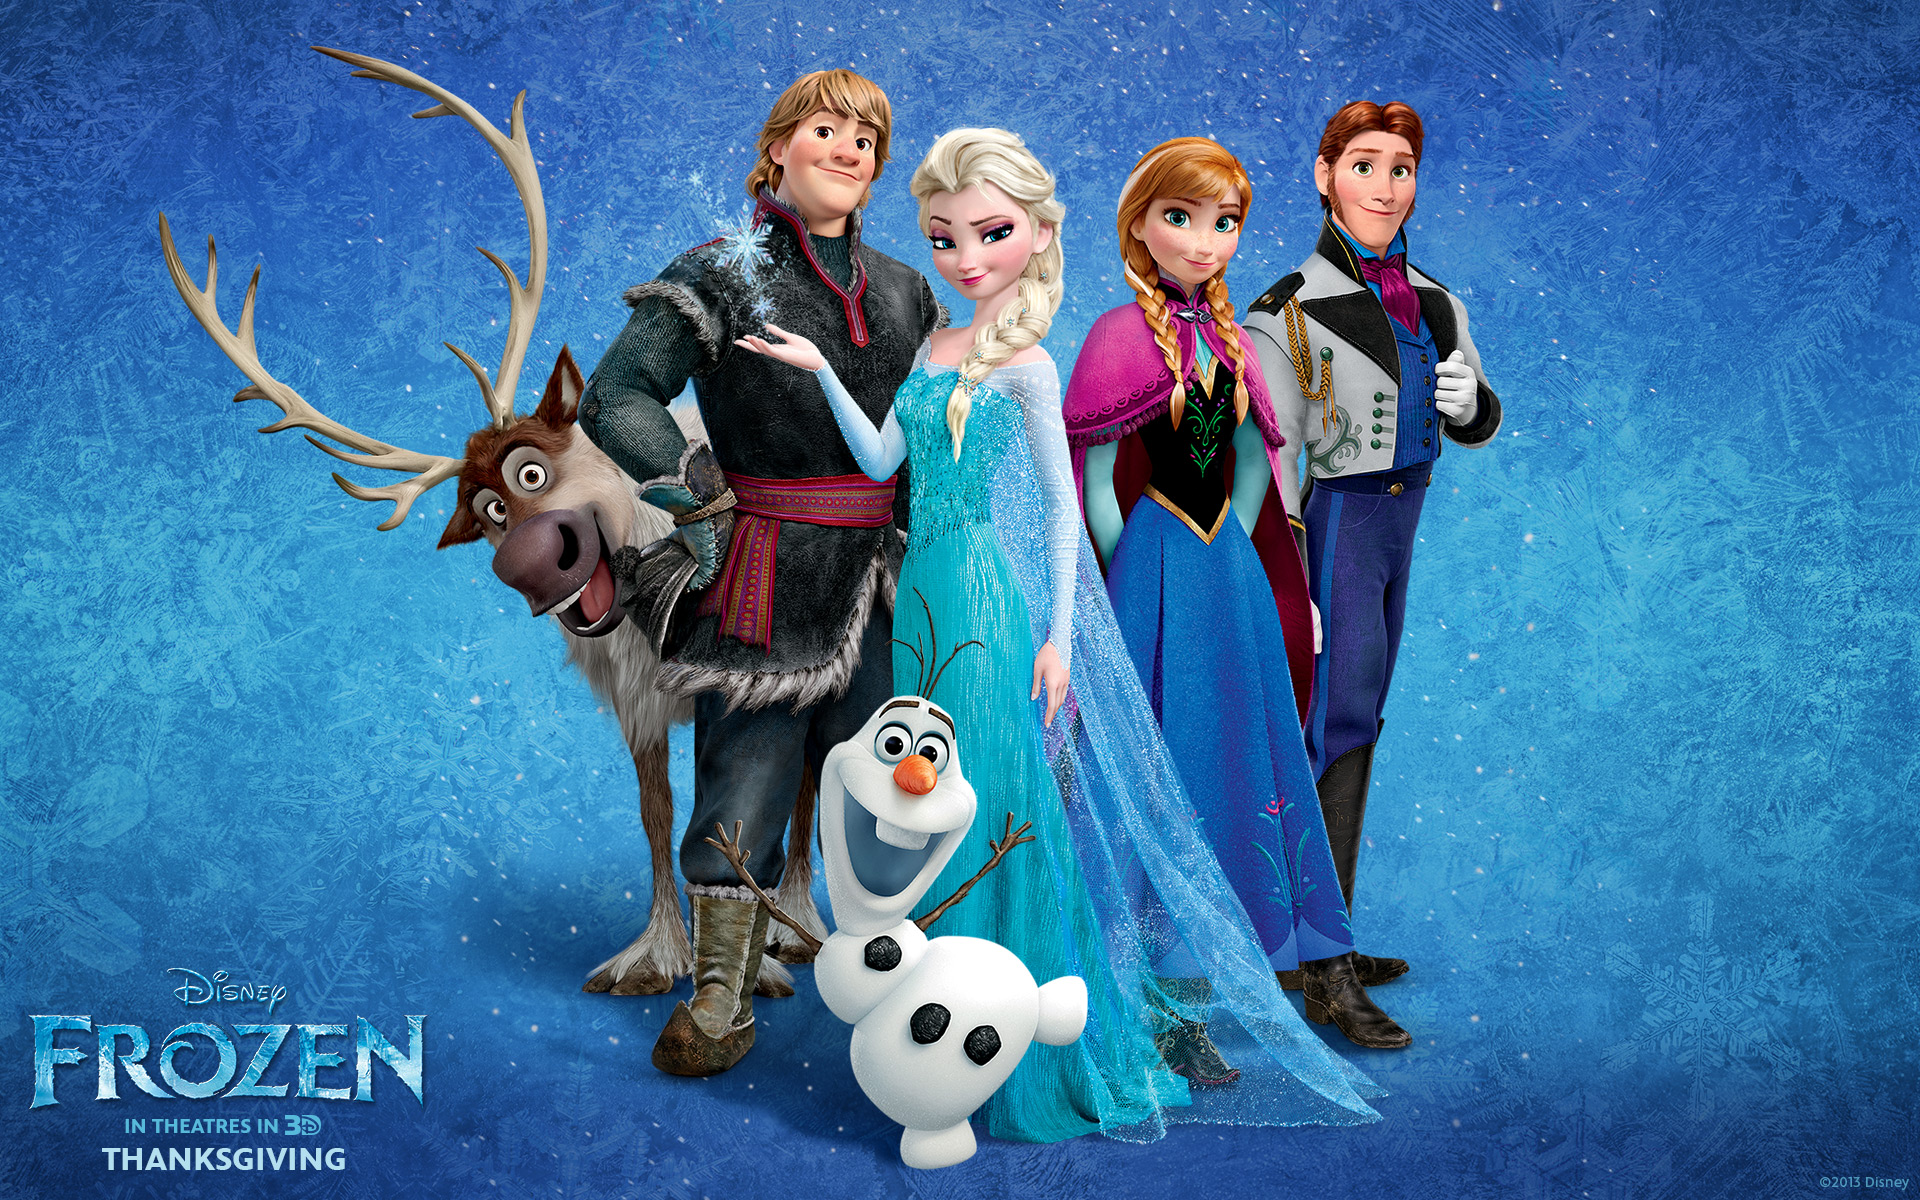 Elsa the Snow Queen Frozen Wallpapers